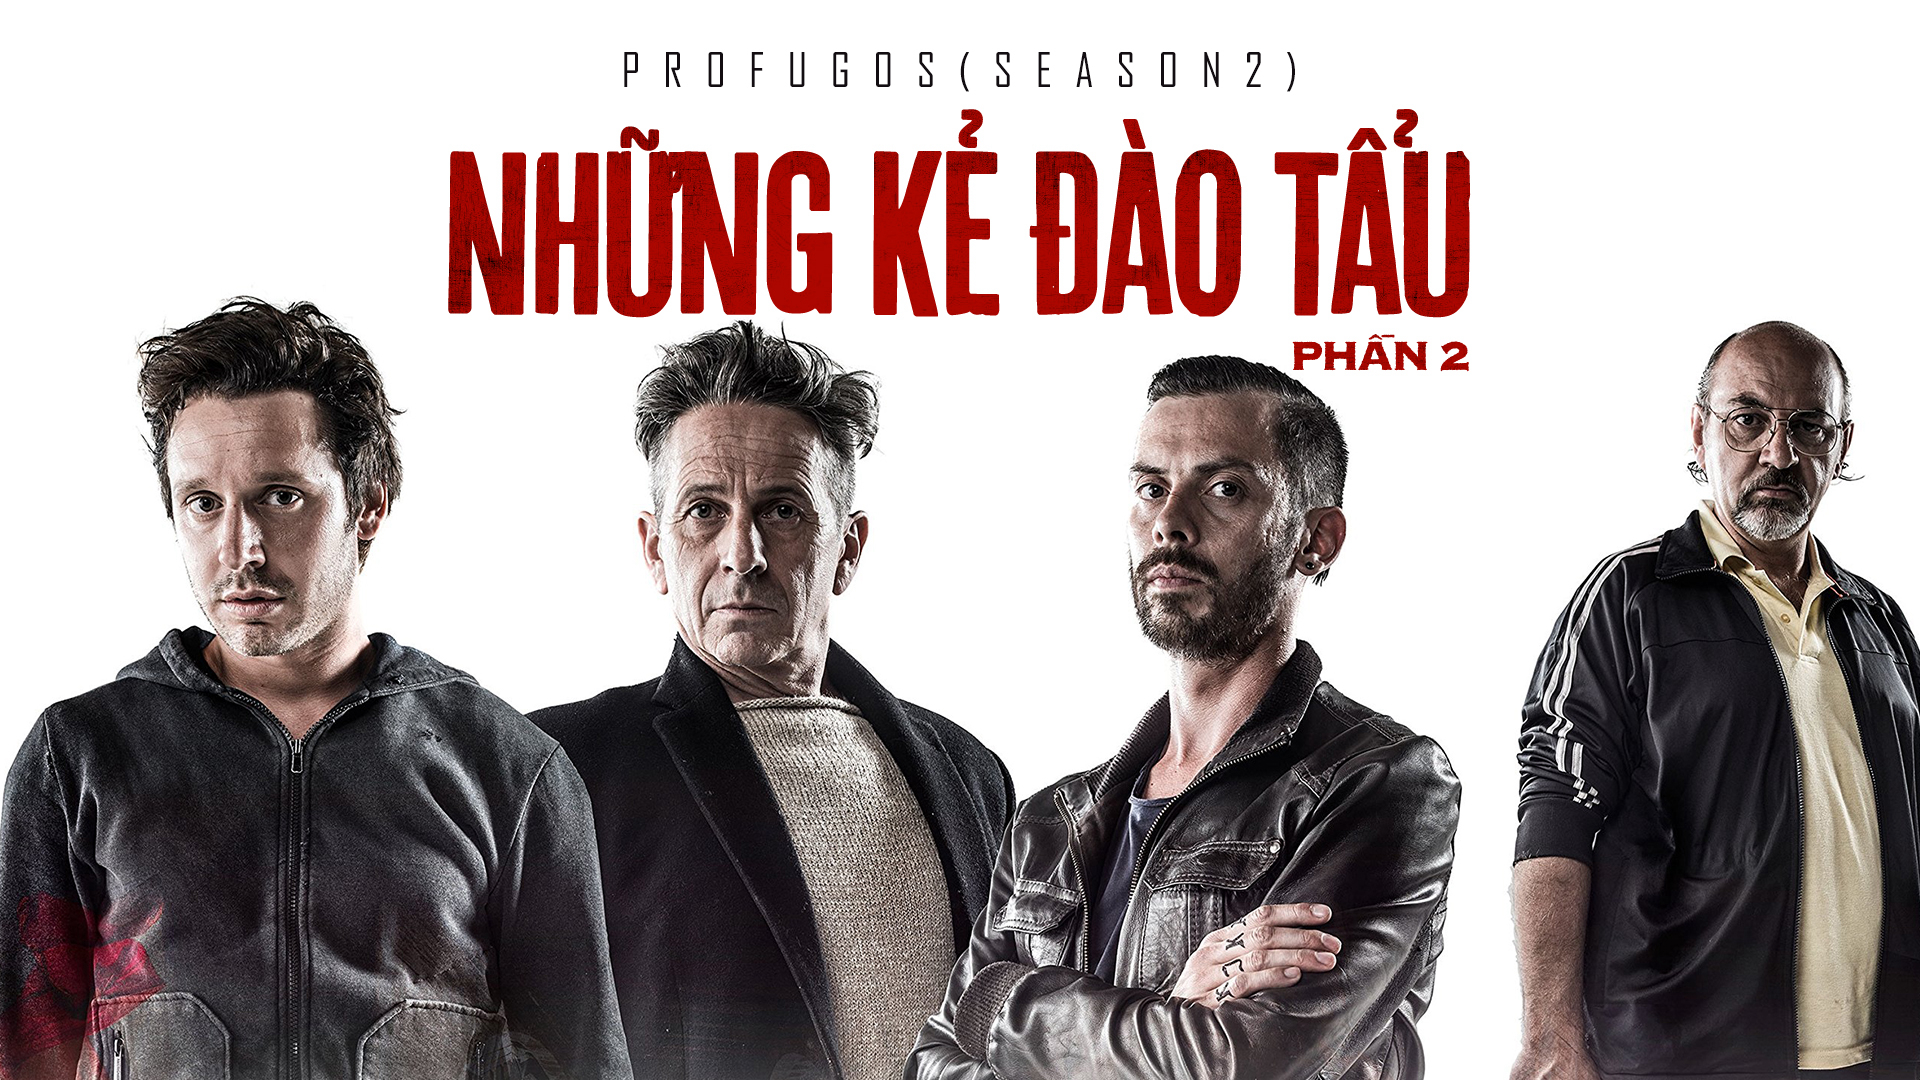 Banner Phim Những Kẻ Đào Tẩu - Phần 2 (Profugos - Season 2)